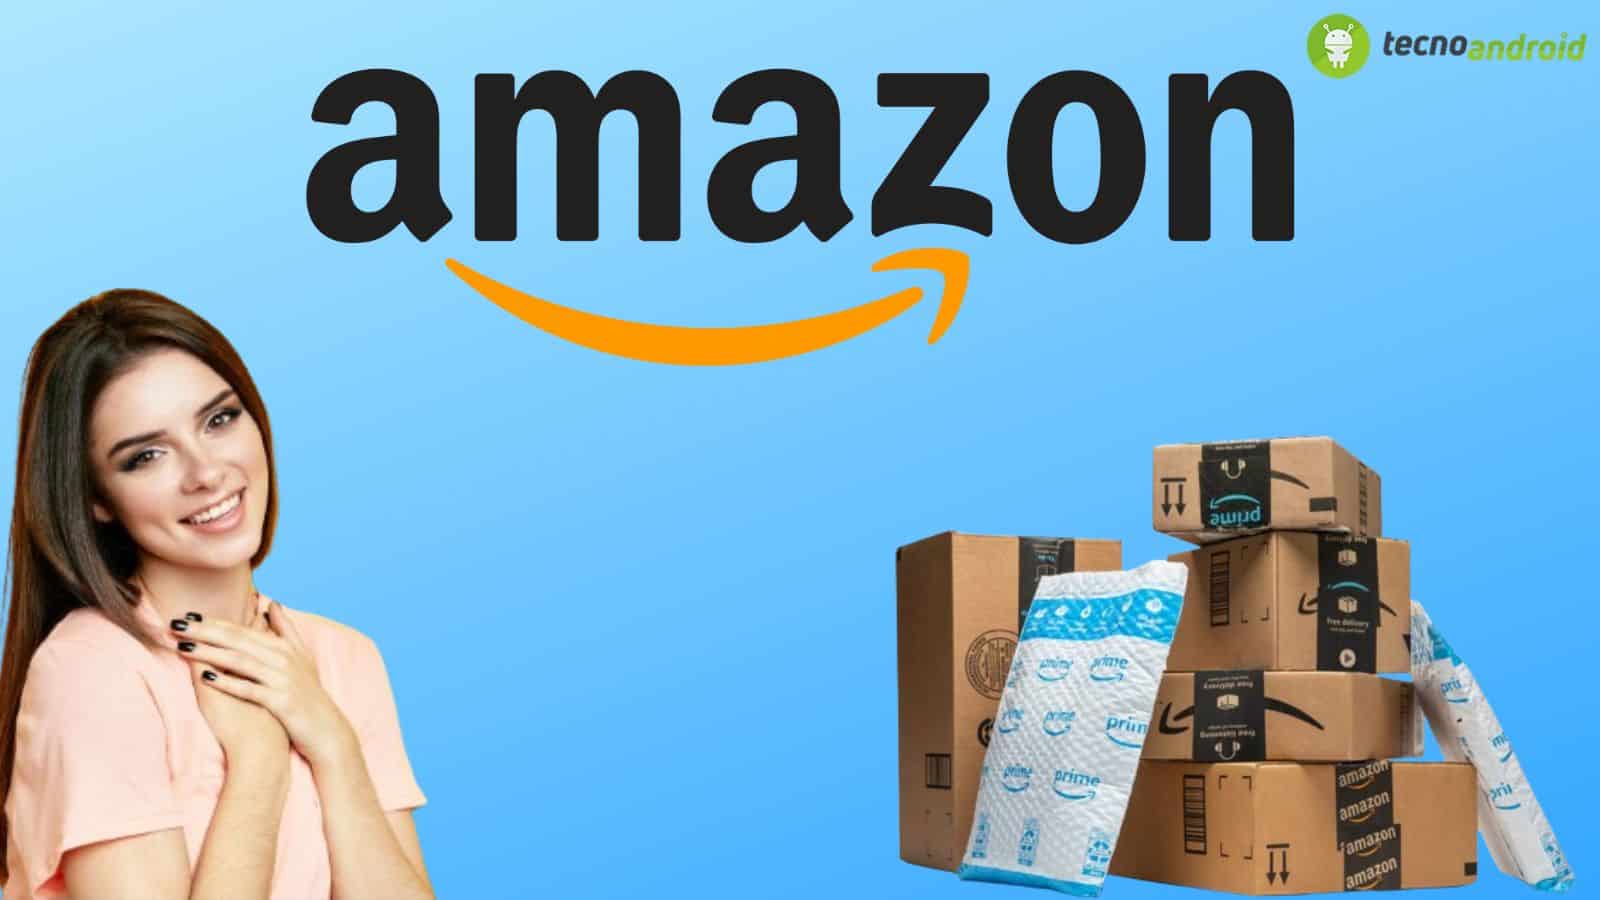 Amazon, grandi sconti nella lista di oggi con prezzi sotto l'80%